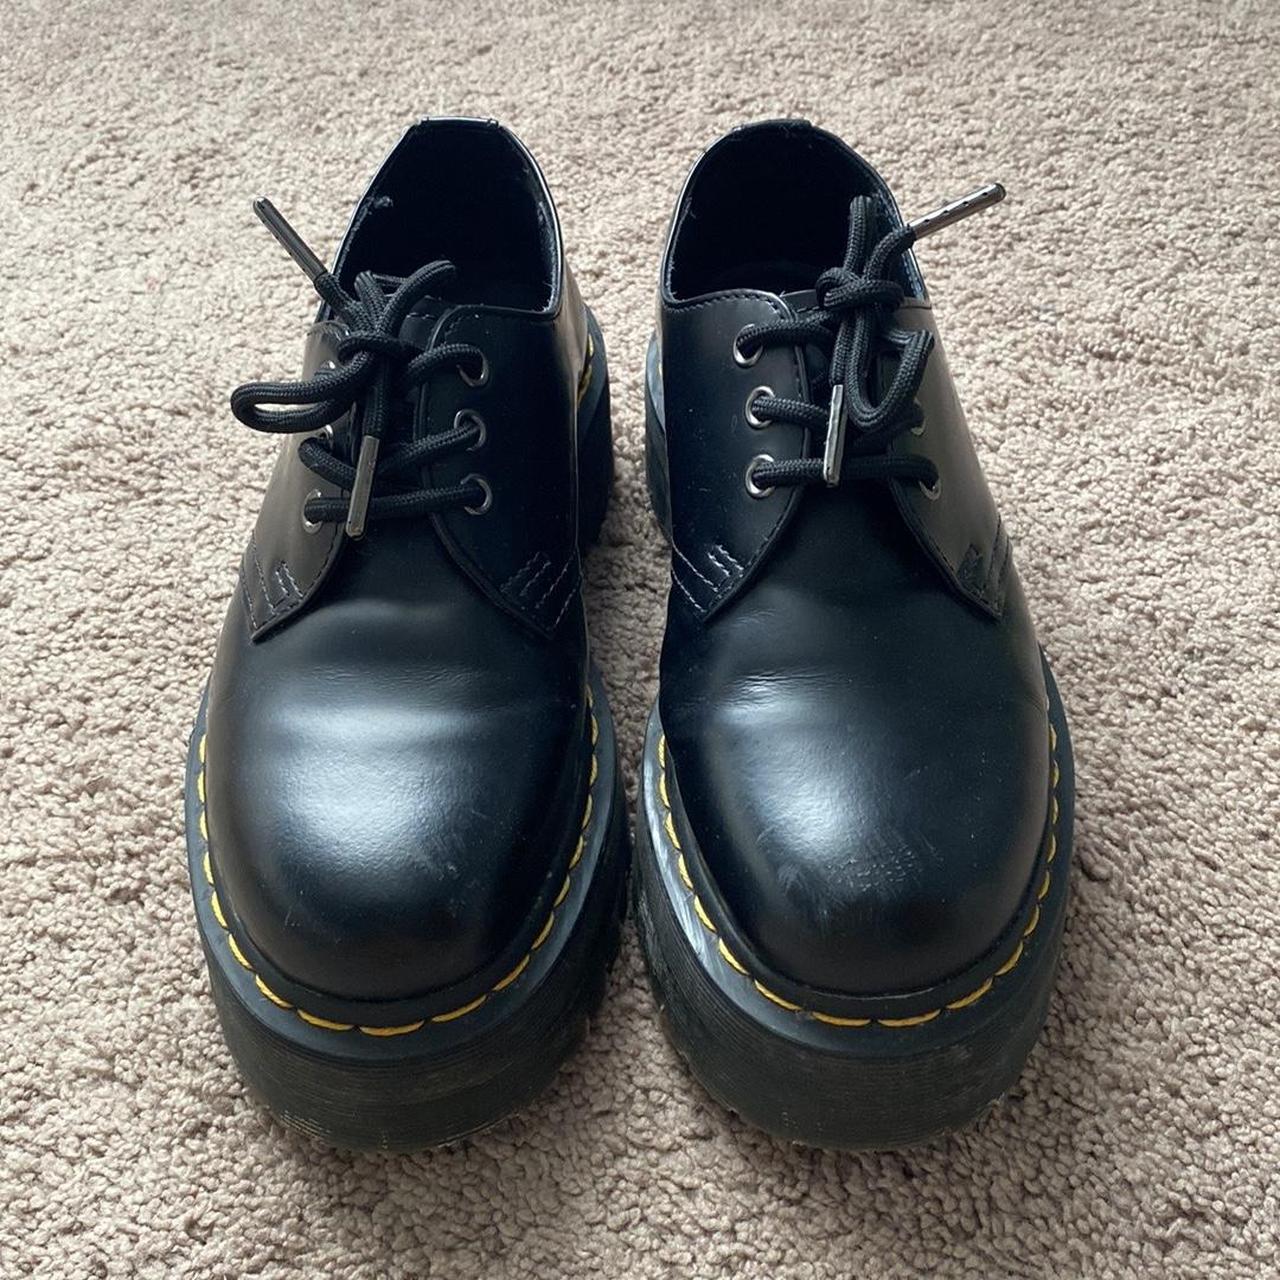 Doc Marten 1461 Smooth Leather Platform Shoes. US M... - Depop